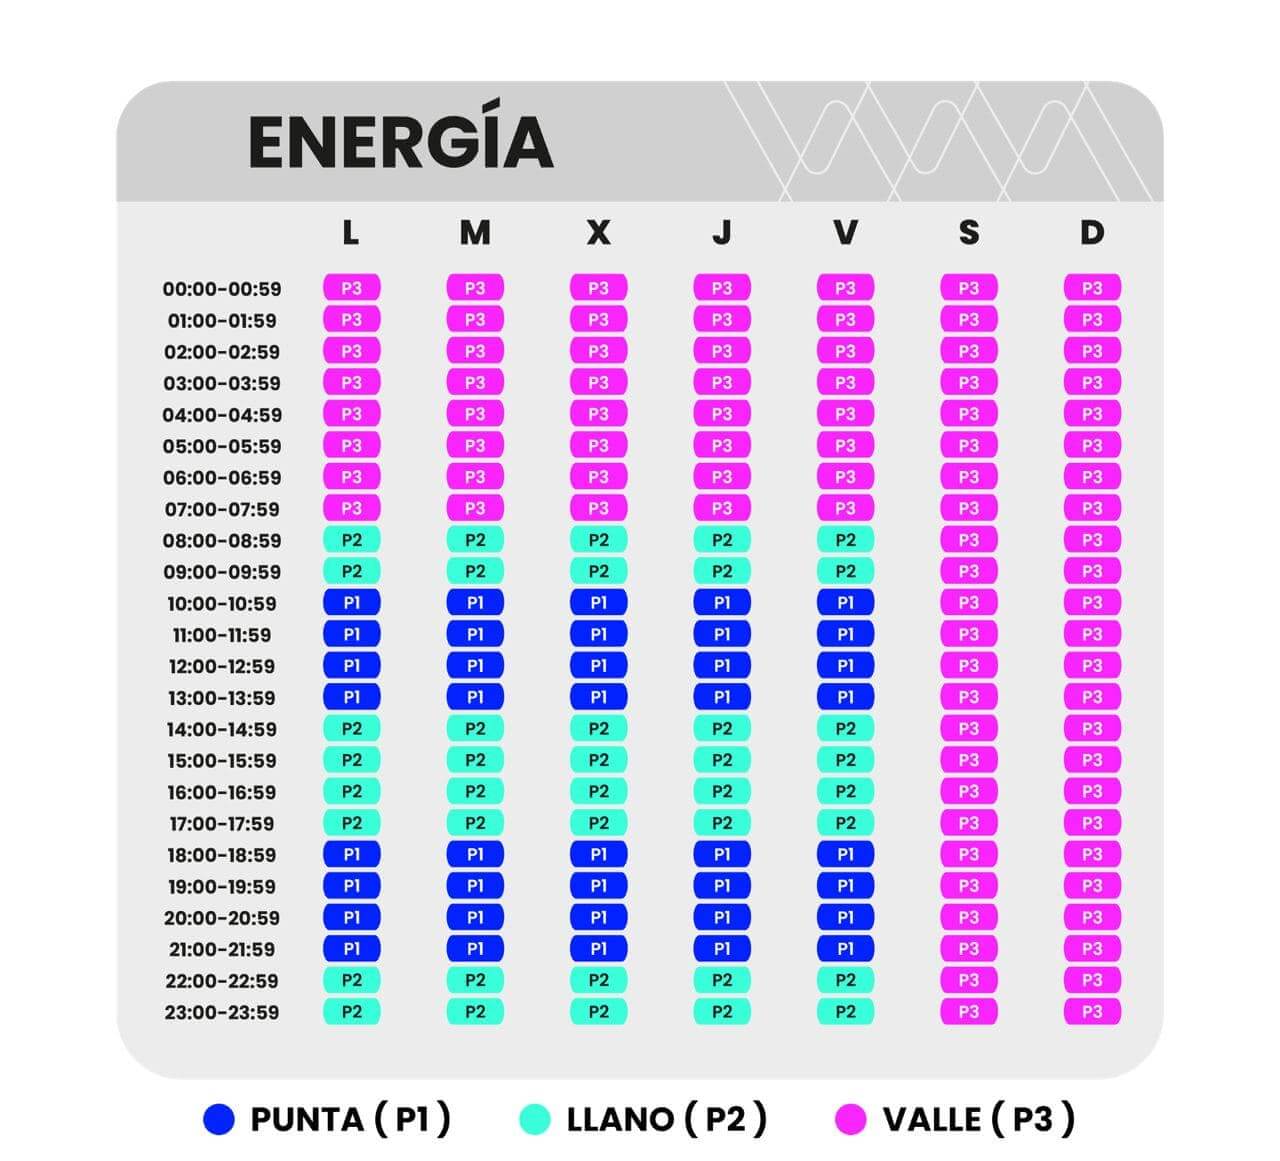 Tabla para comparar tarifas energía